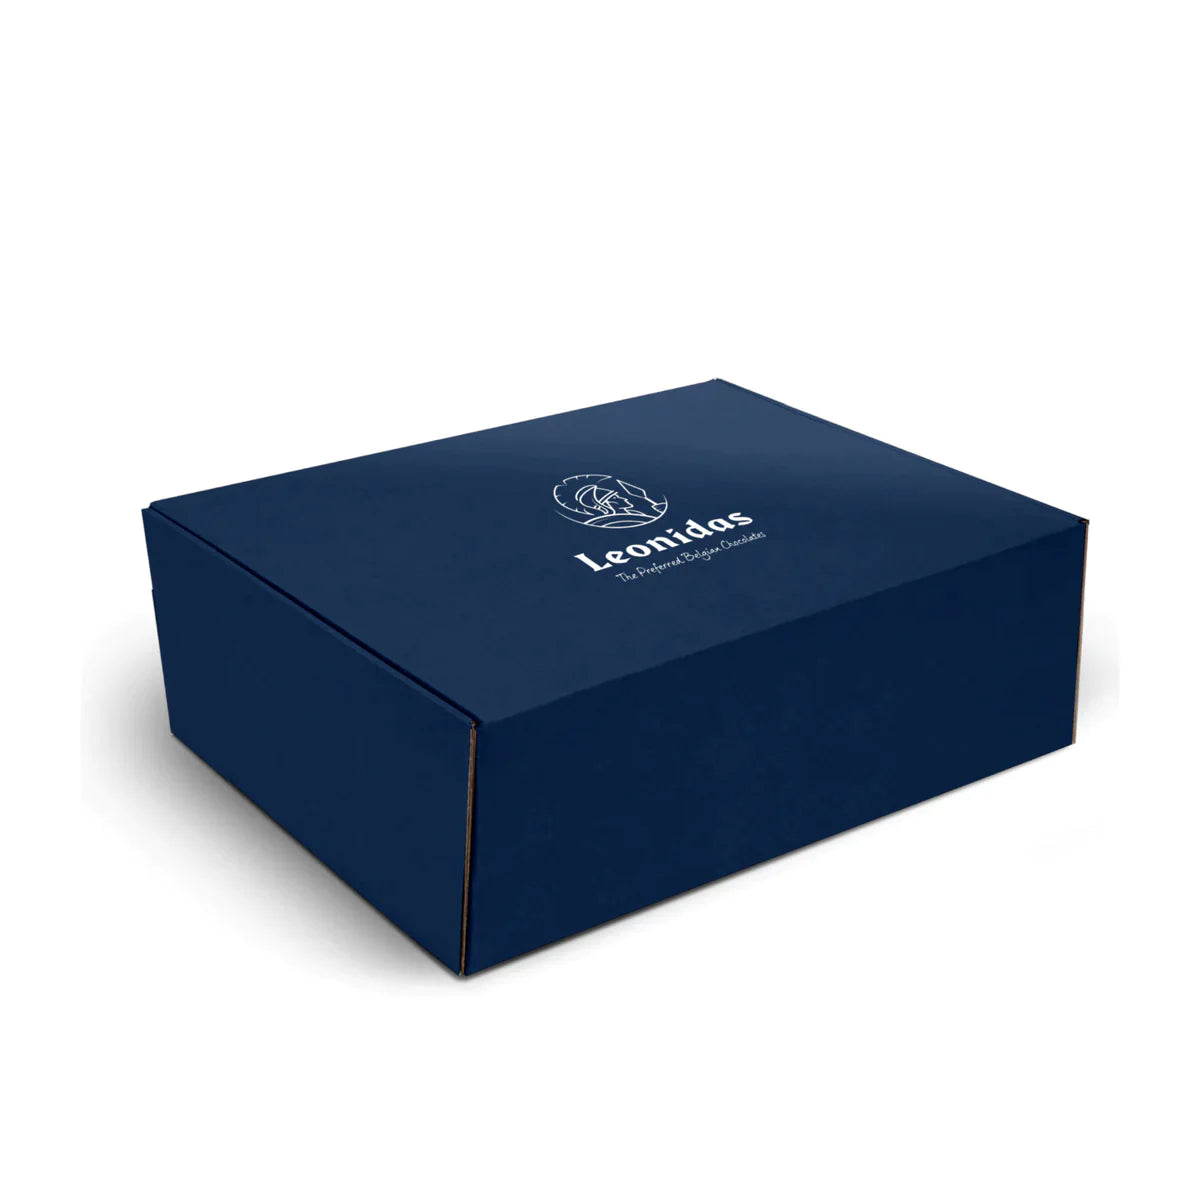 Leonidas Chocolate Heritage Hamper Box